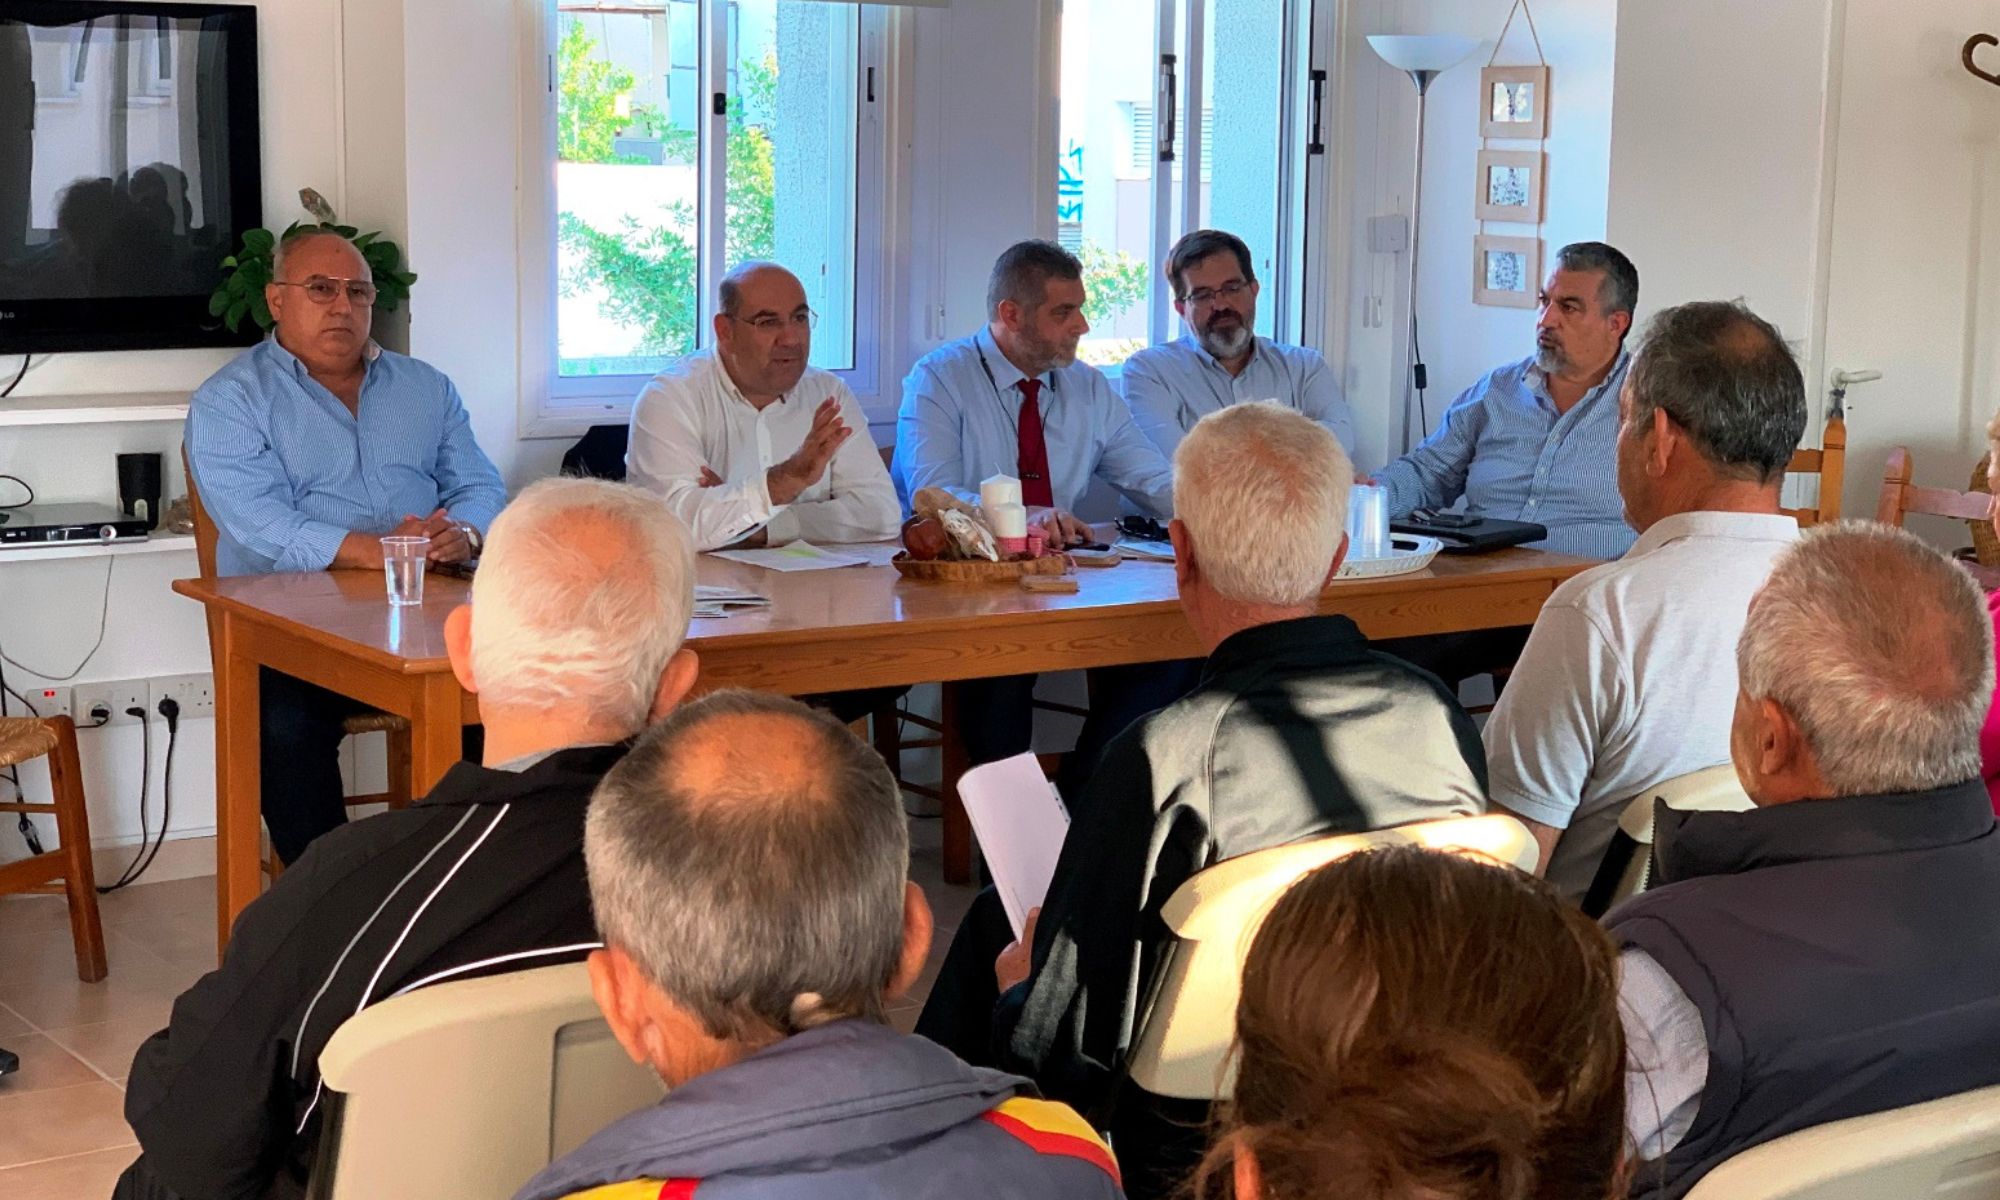 Λάρνακα: Πραγματοποιήθηκε συνάντηση του Δημάρχου με κατοίκους του συνοικισμού Καμάρων και περιμετρικά αυτού